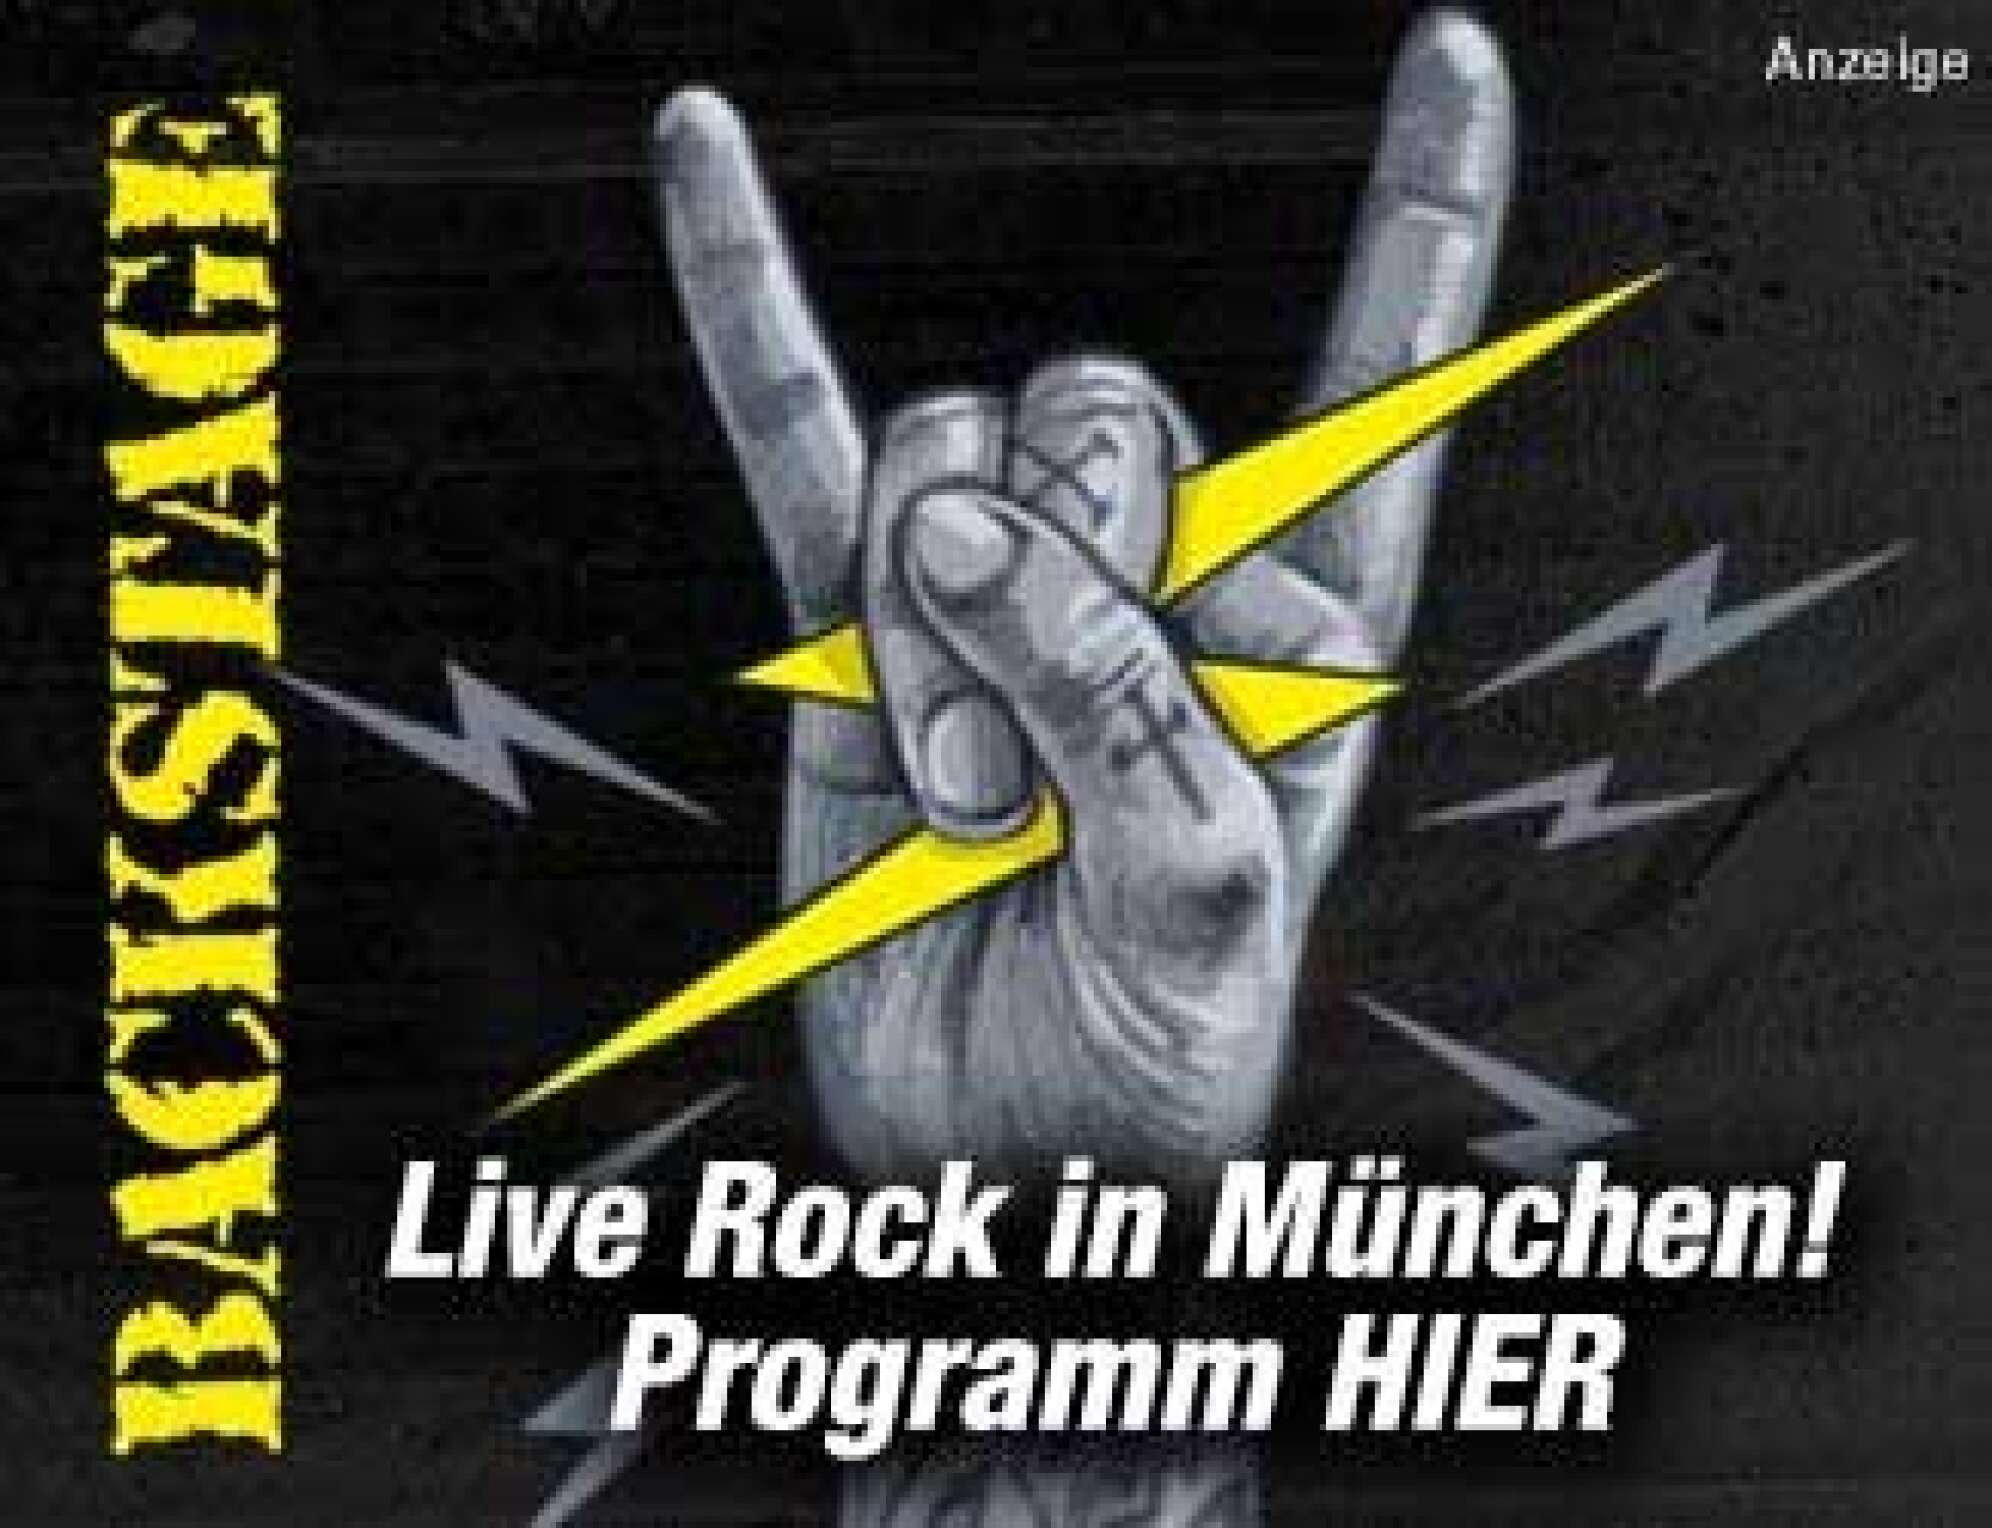 Anzeige des Backstage München - eine gezeichnete Hand, die zur Pommesgabel geformt ist, dazu der Text: Live Rock in München! Programm HIER